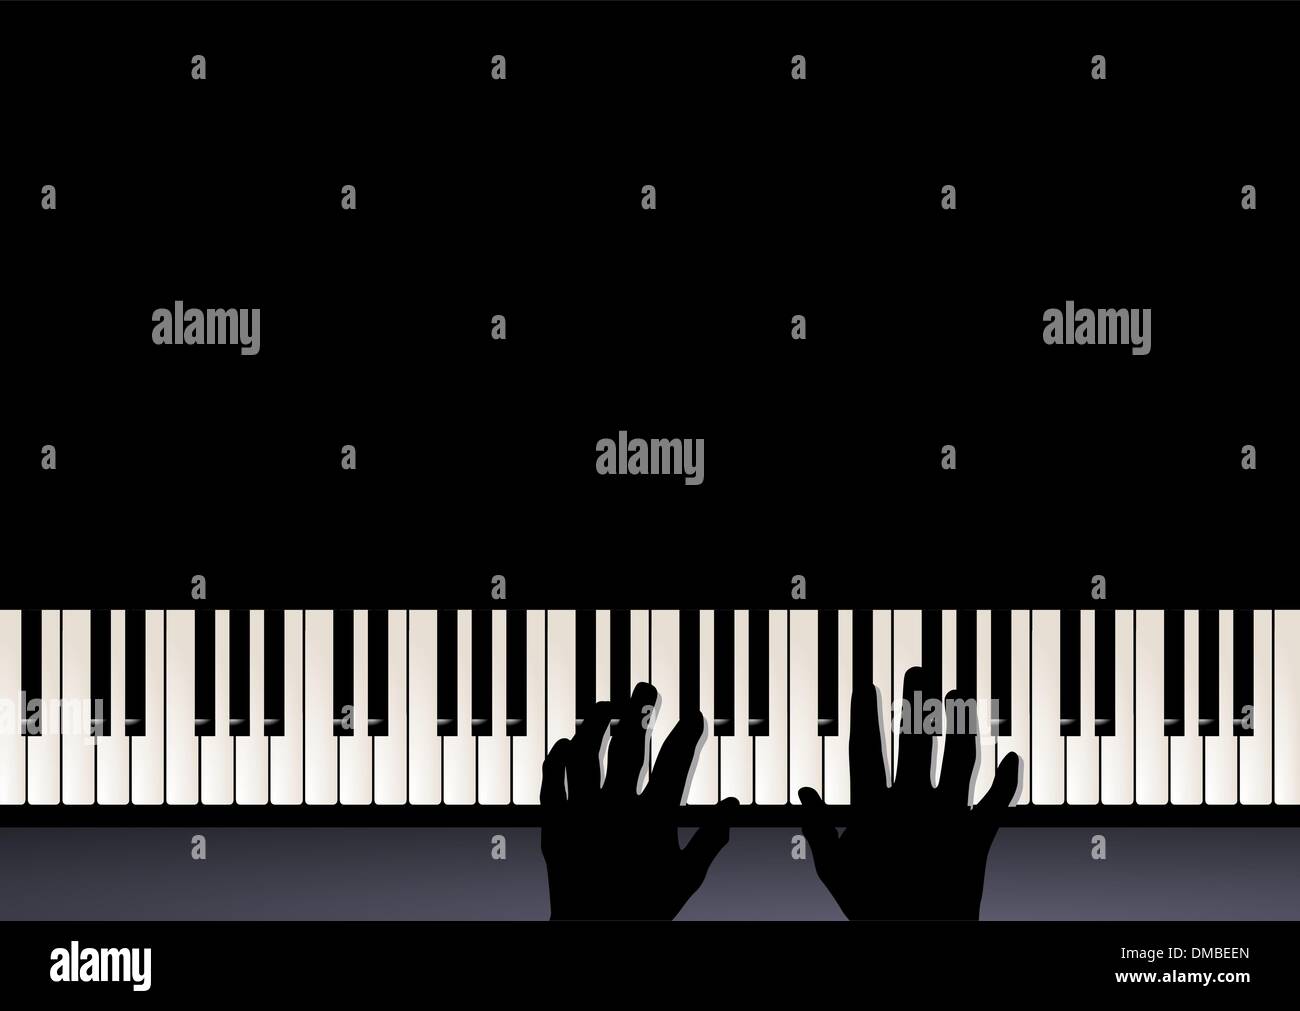 Klavier spielen Sie, zwei Hände, die Wiedergabe von Musik Stock Vektor